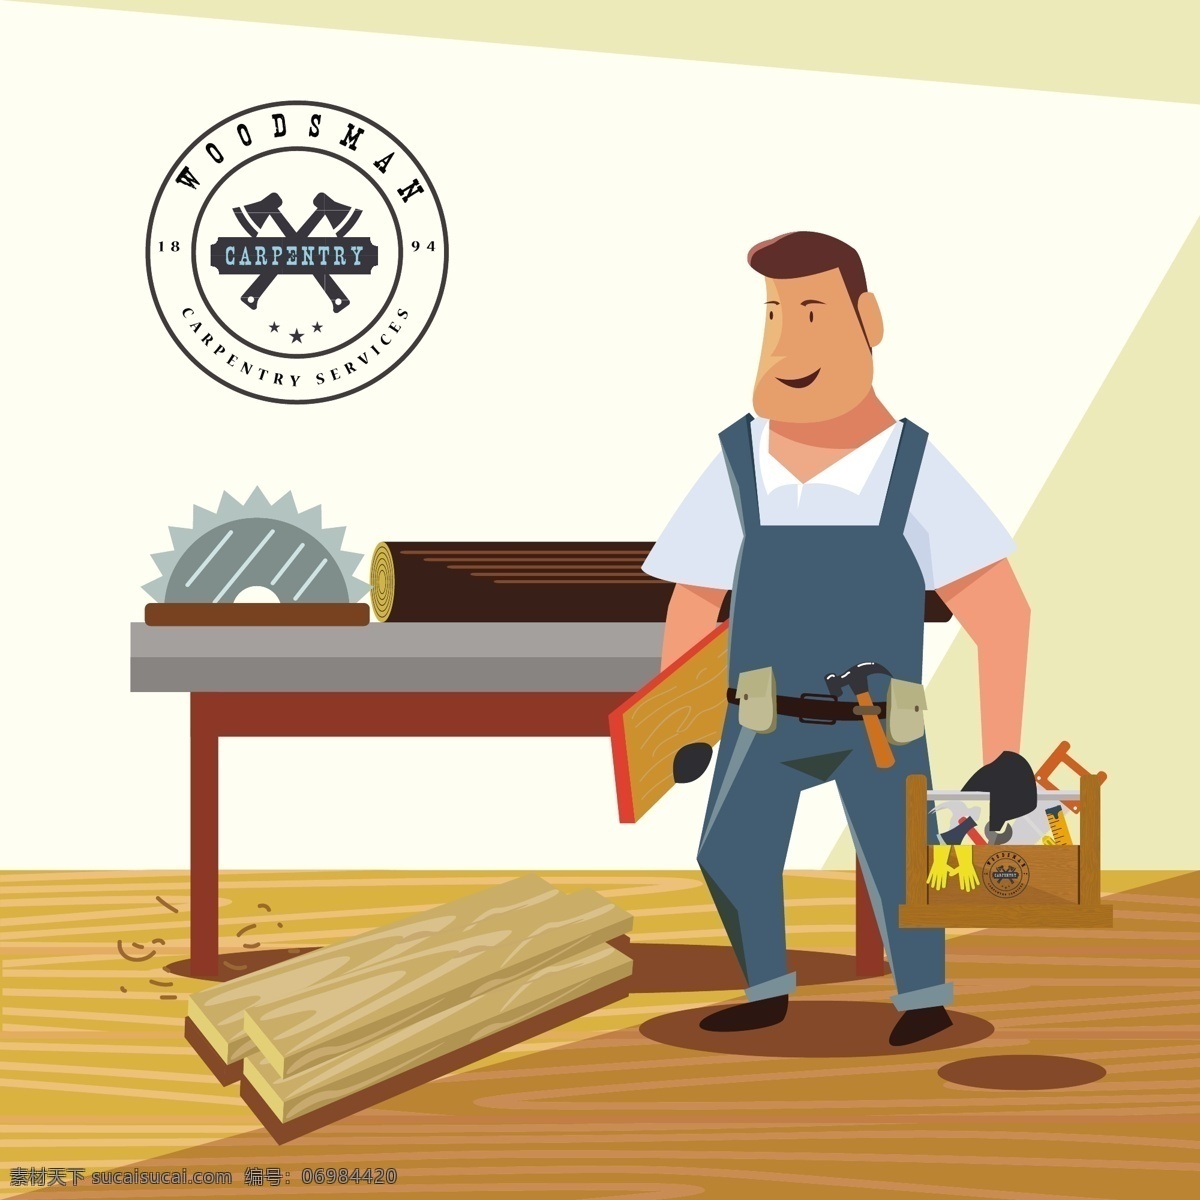 木工 作业 背景 图 广告背景 广告 背景素材 背景图 木材 实木 工具 锤子 工人 木地板 标志 工具箱 创意